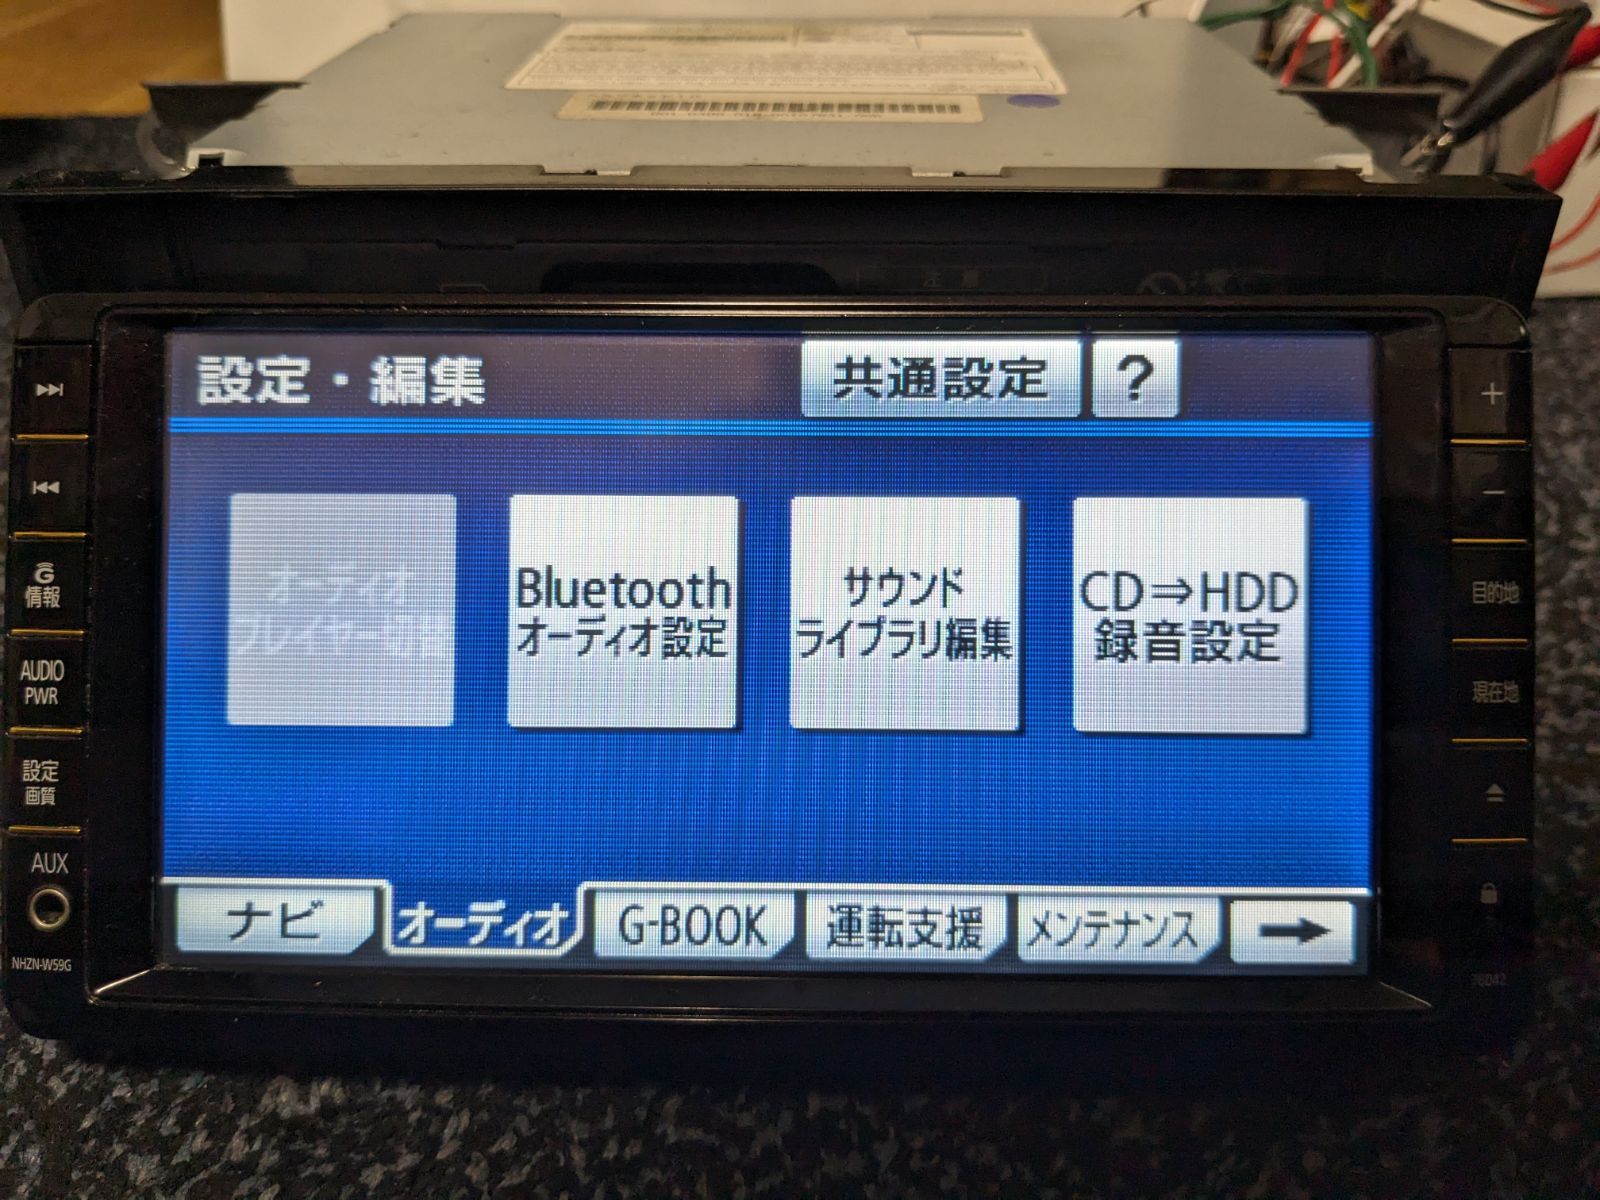 トヨタ純正 HDDナビ NHZN-W59G Bluetooth機能付き - カーナビ